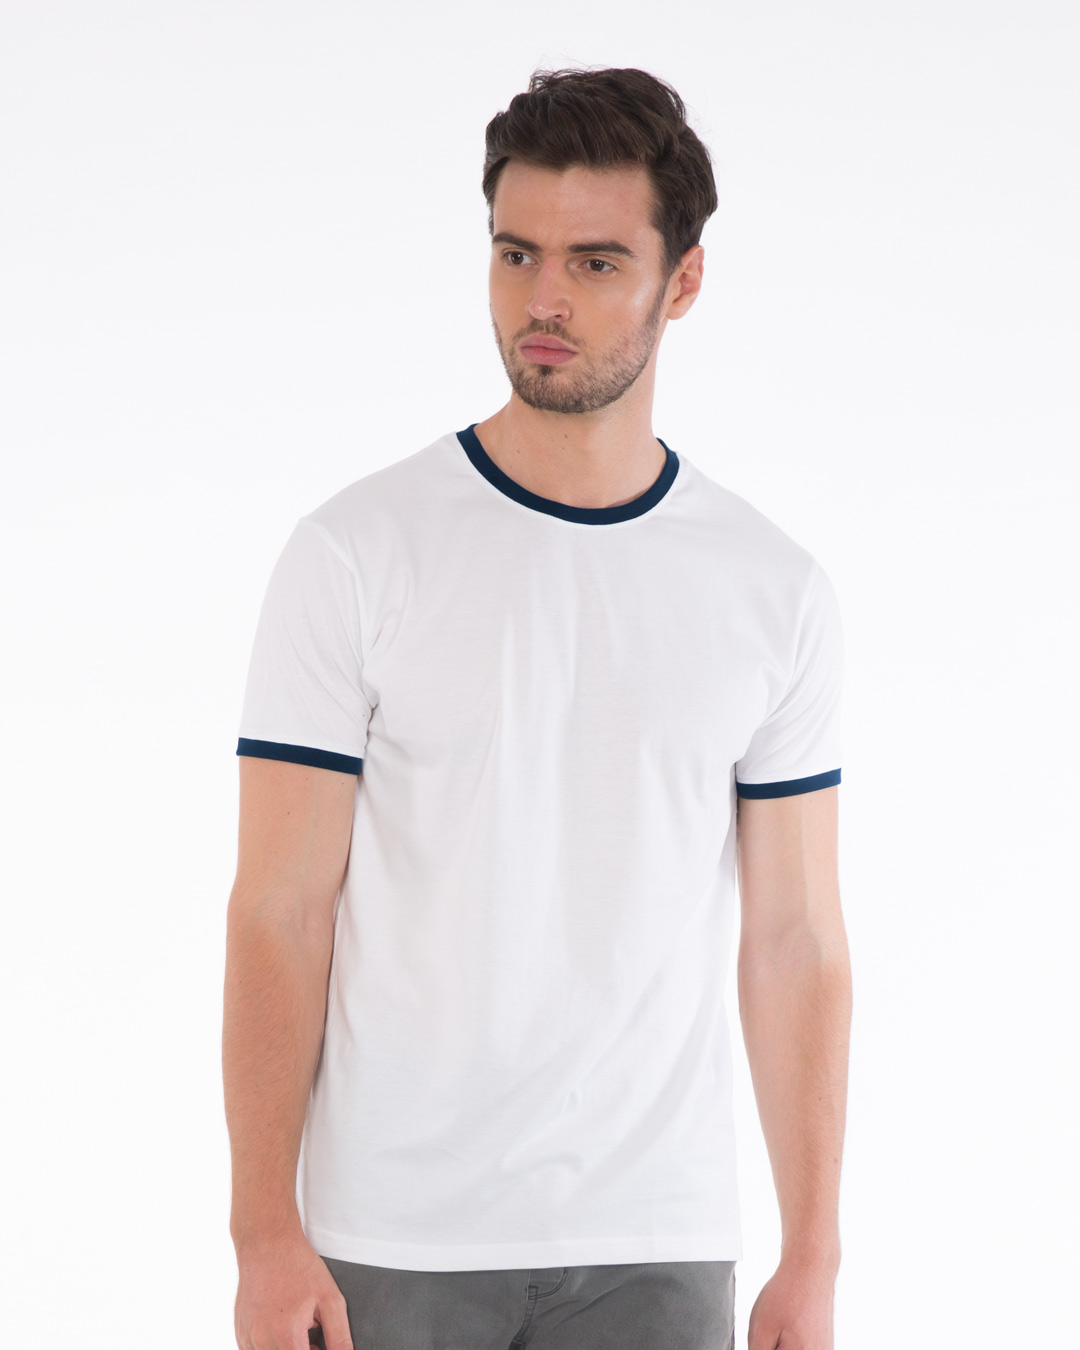 Buy White-Navy Blue Ringer T-Shirt Online at Bewakoof